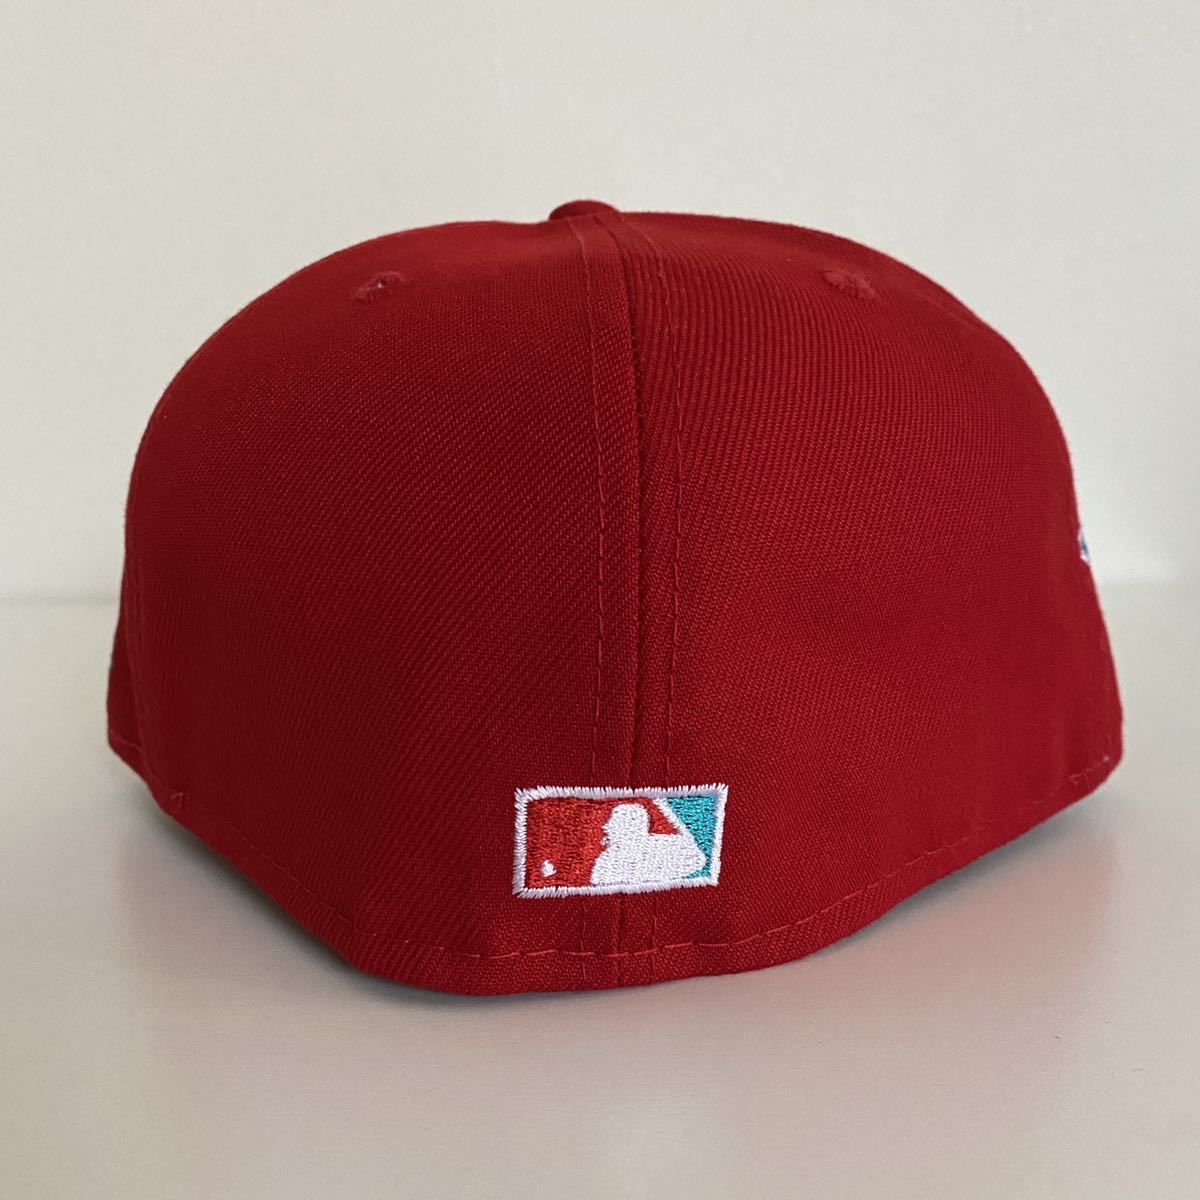 新品 New Era ツバ裏ティール NY Yankees Red Cap Teal Under Visor 7 3/8 58.7cm ニュー